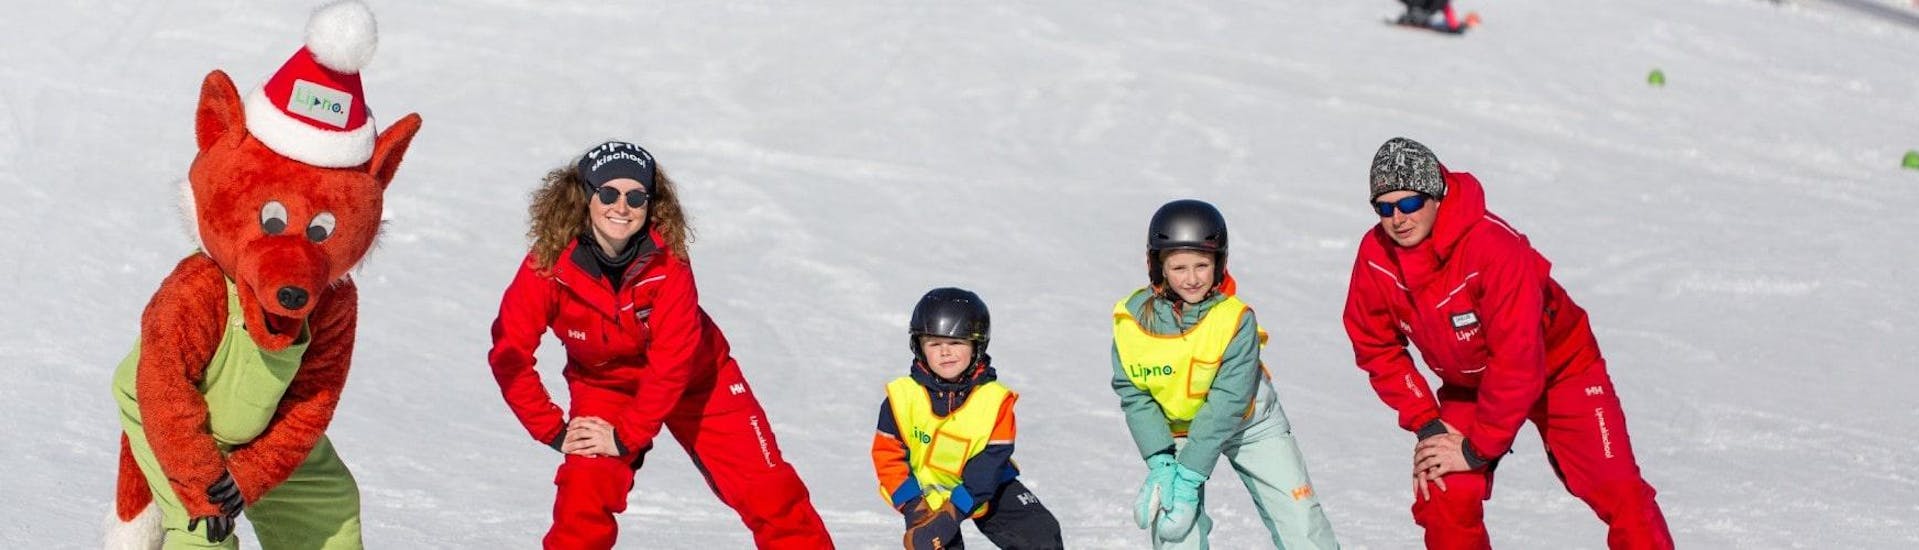 Skikurs für Kinder (4-5 Jahre) - Gruppenunterricht.